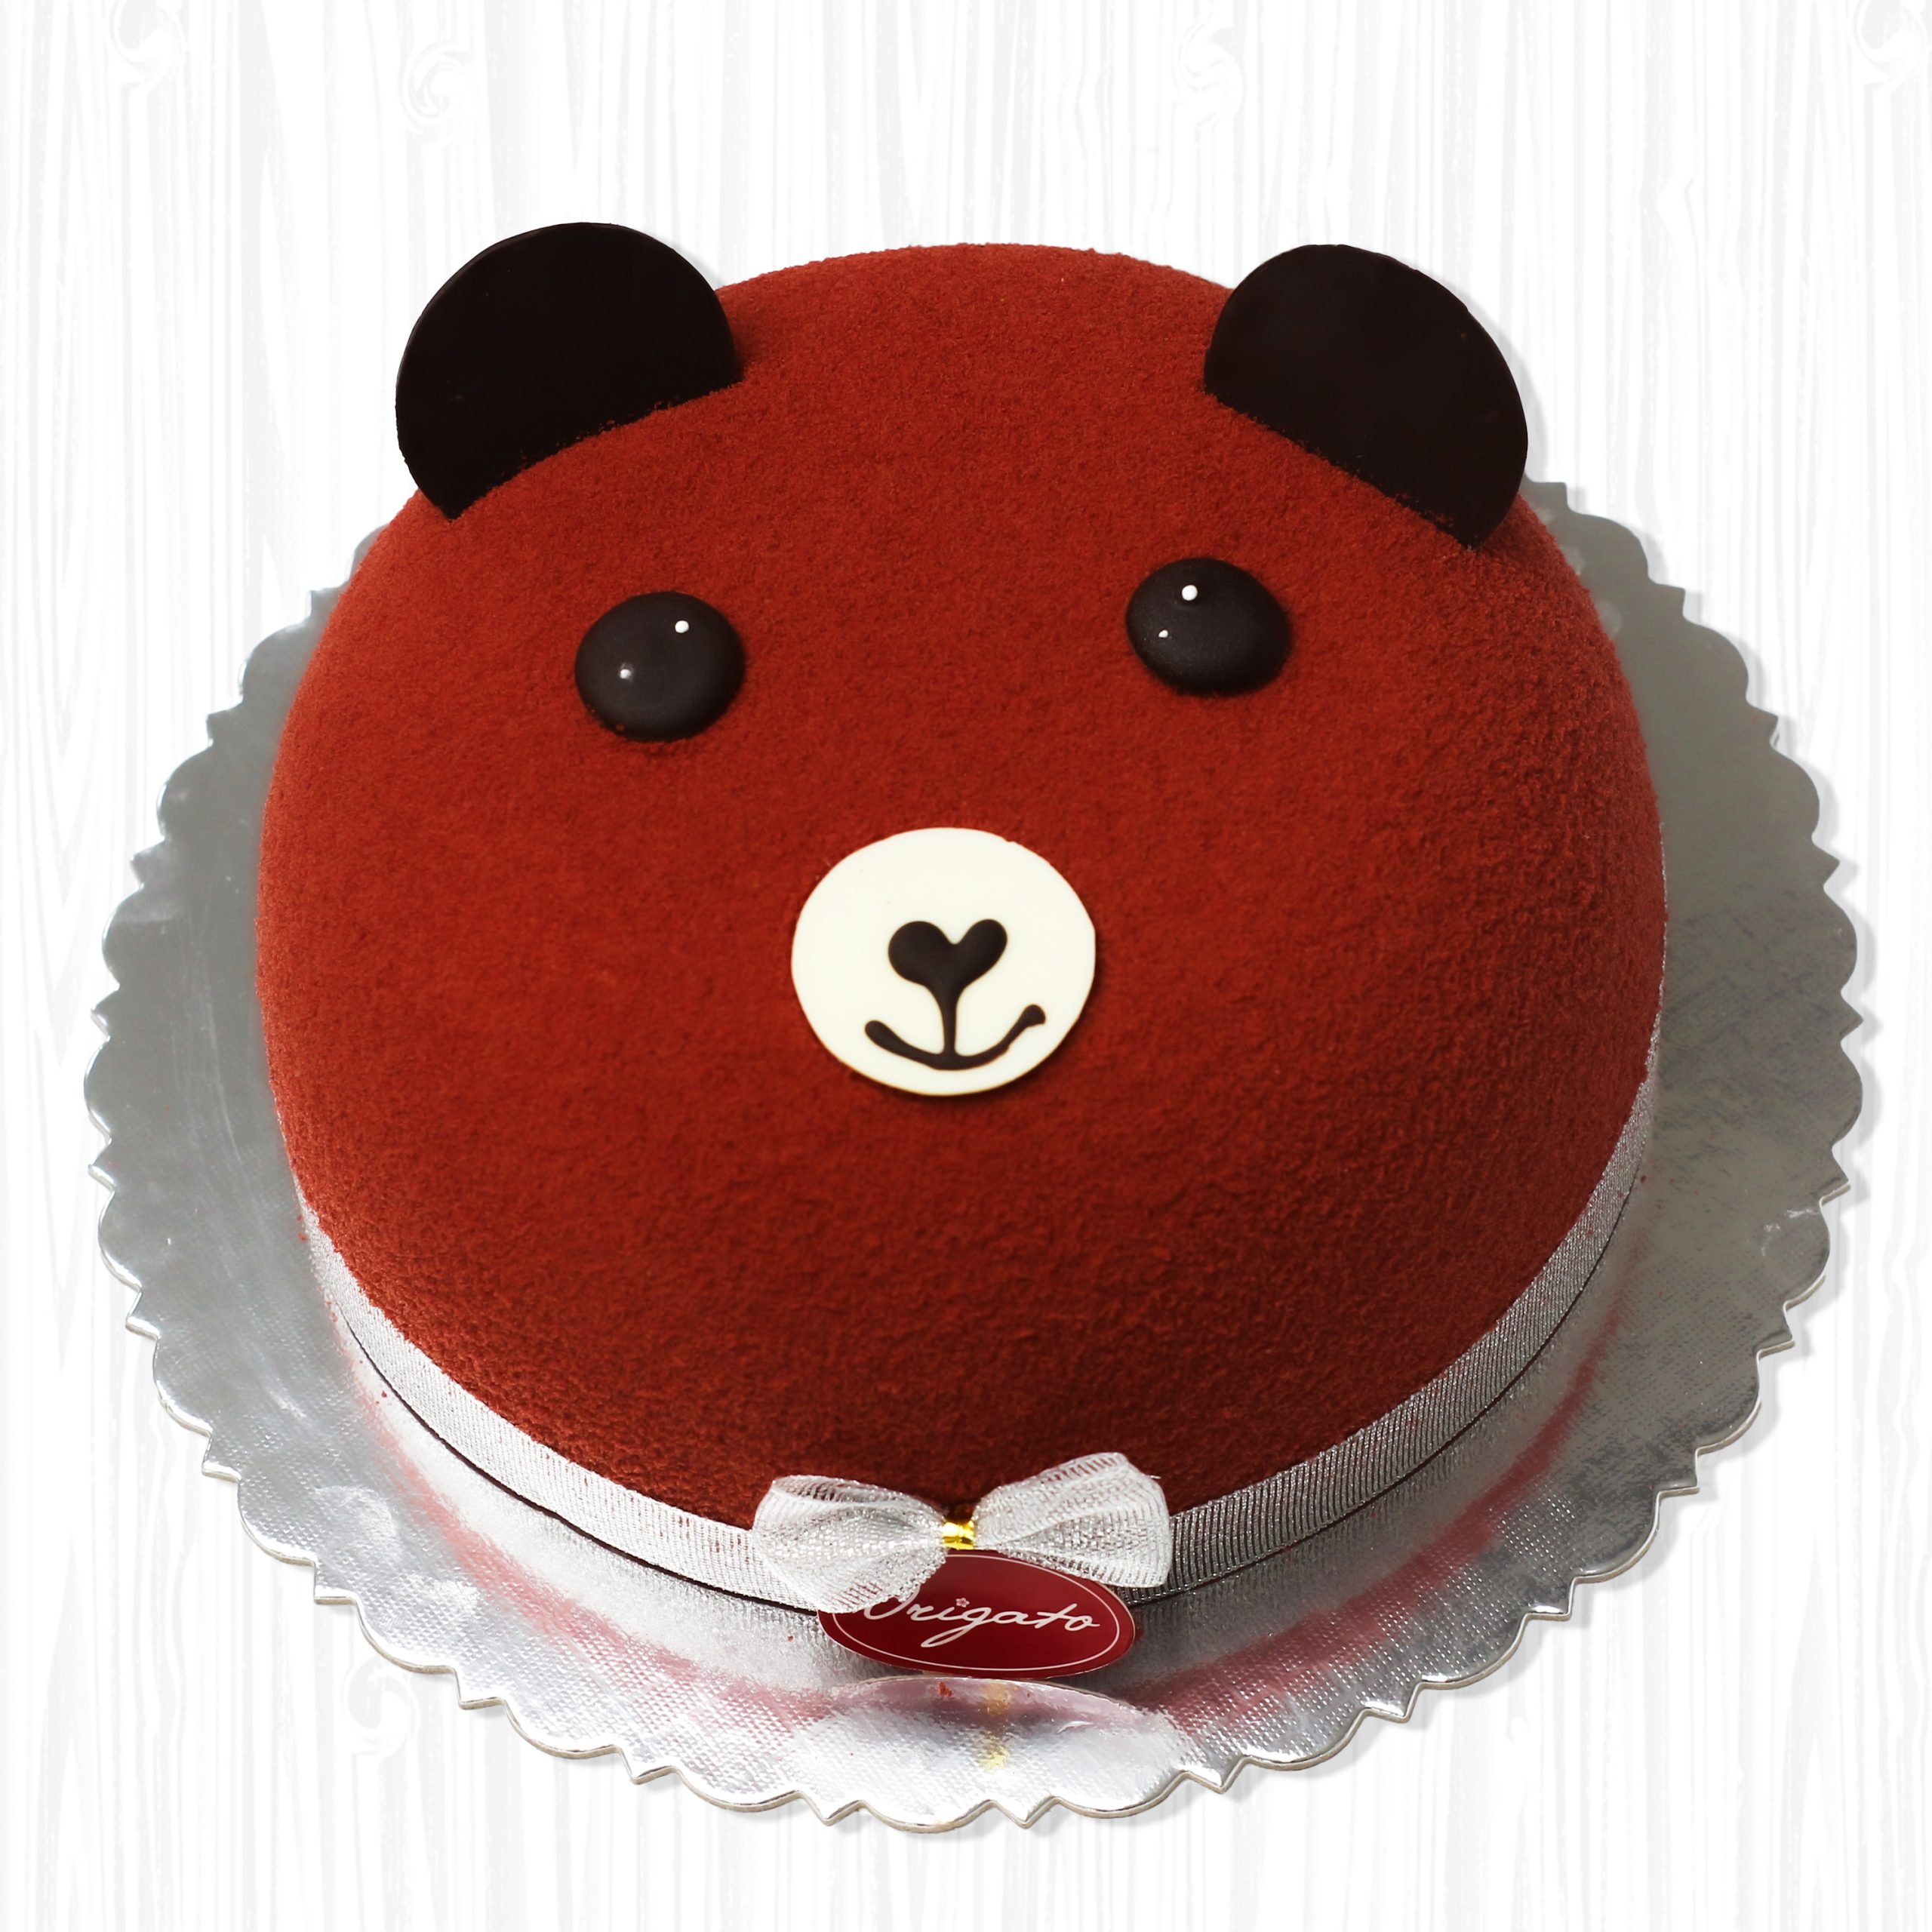 Bánh sinh nhật hình con gấu nâu đẹp nhất 6592  Bánh sinh nhật kỷ niệm